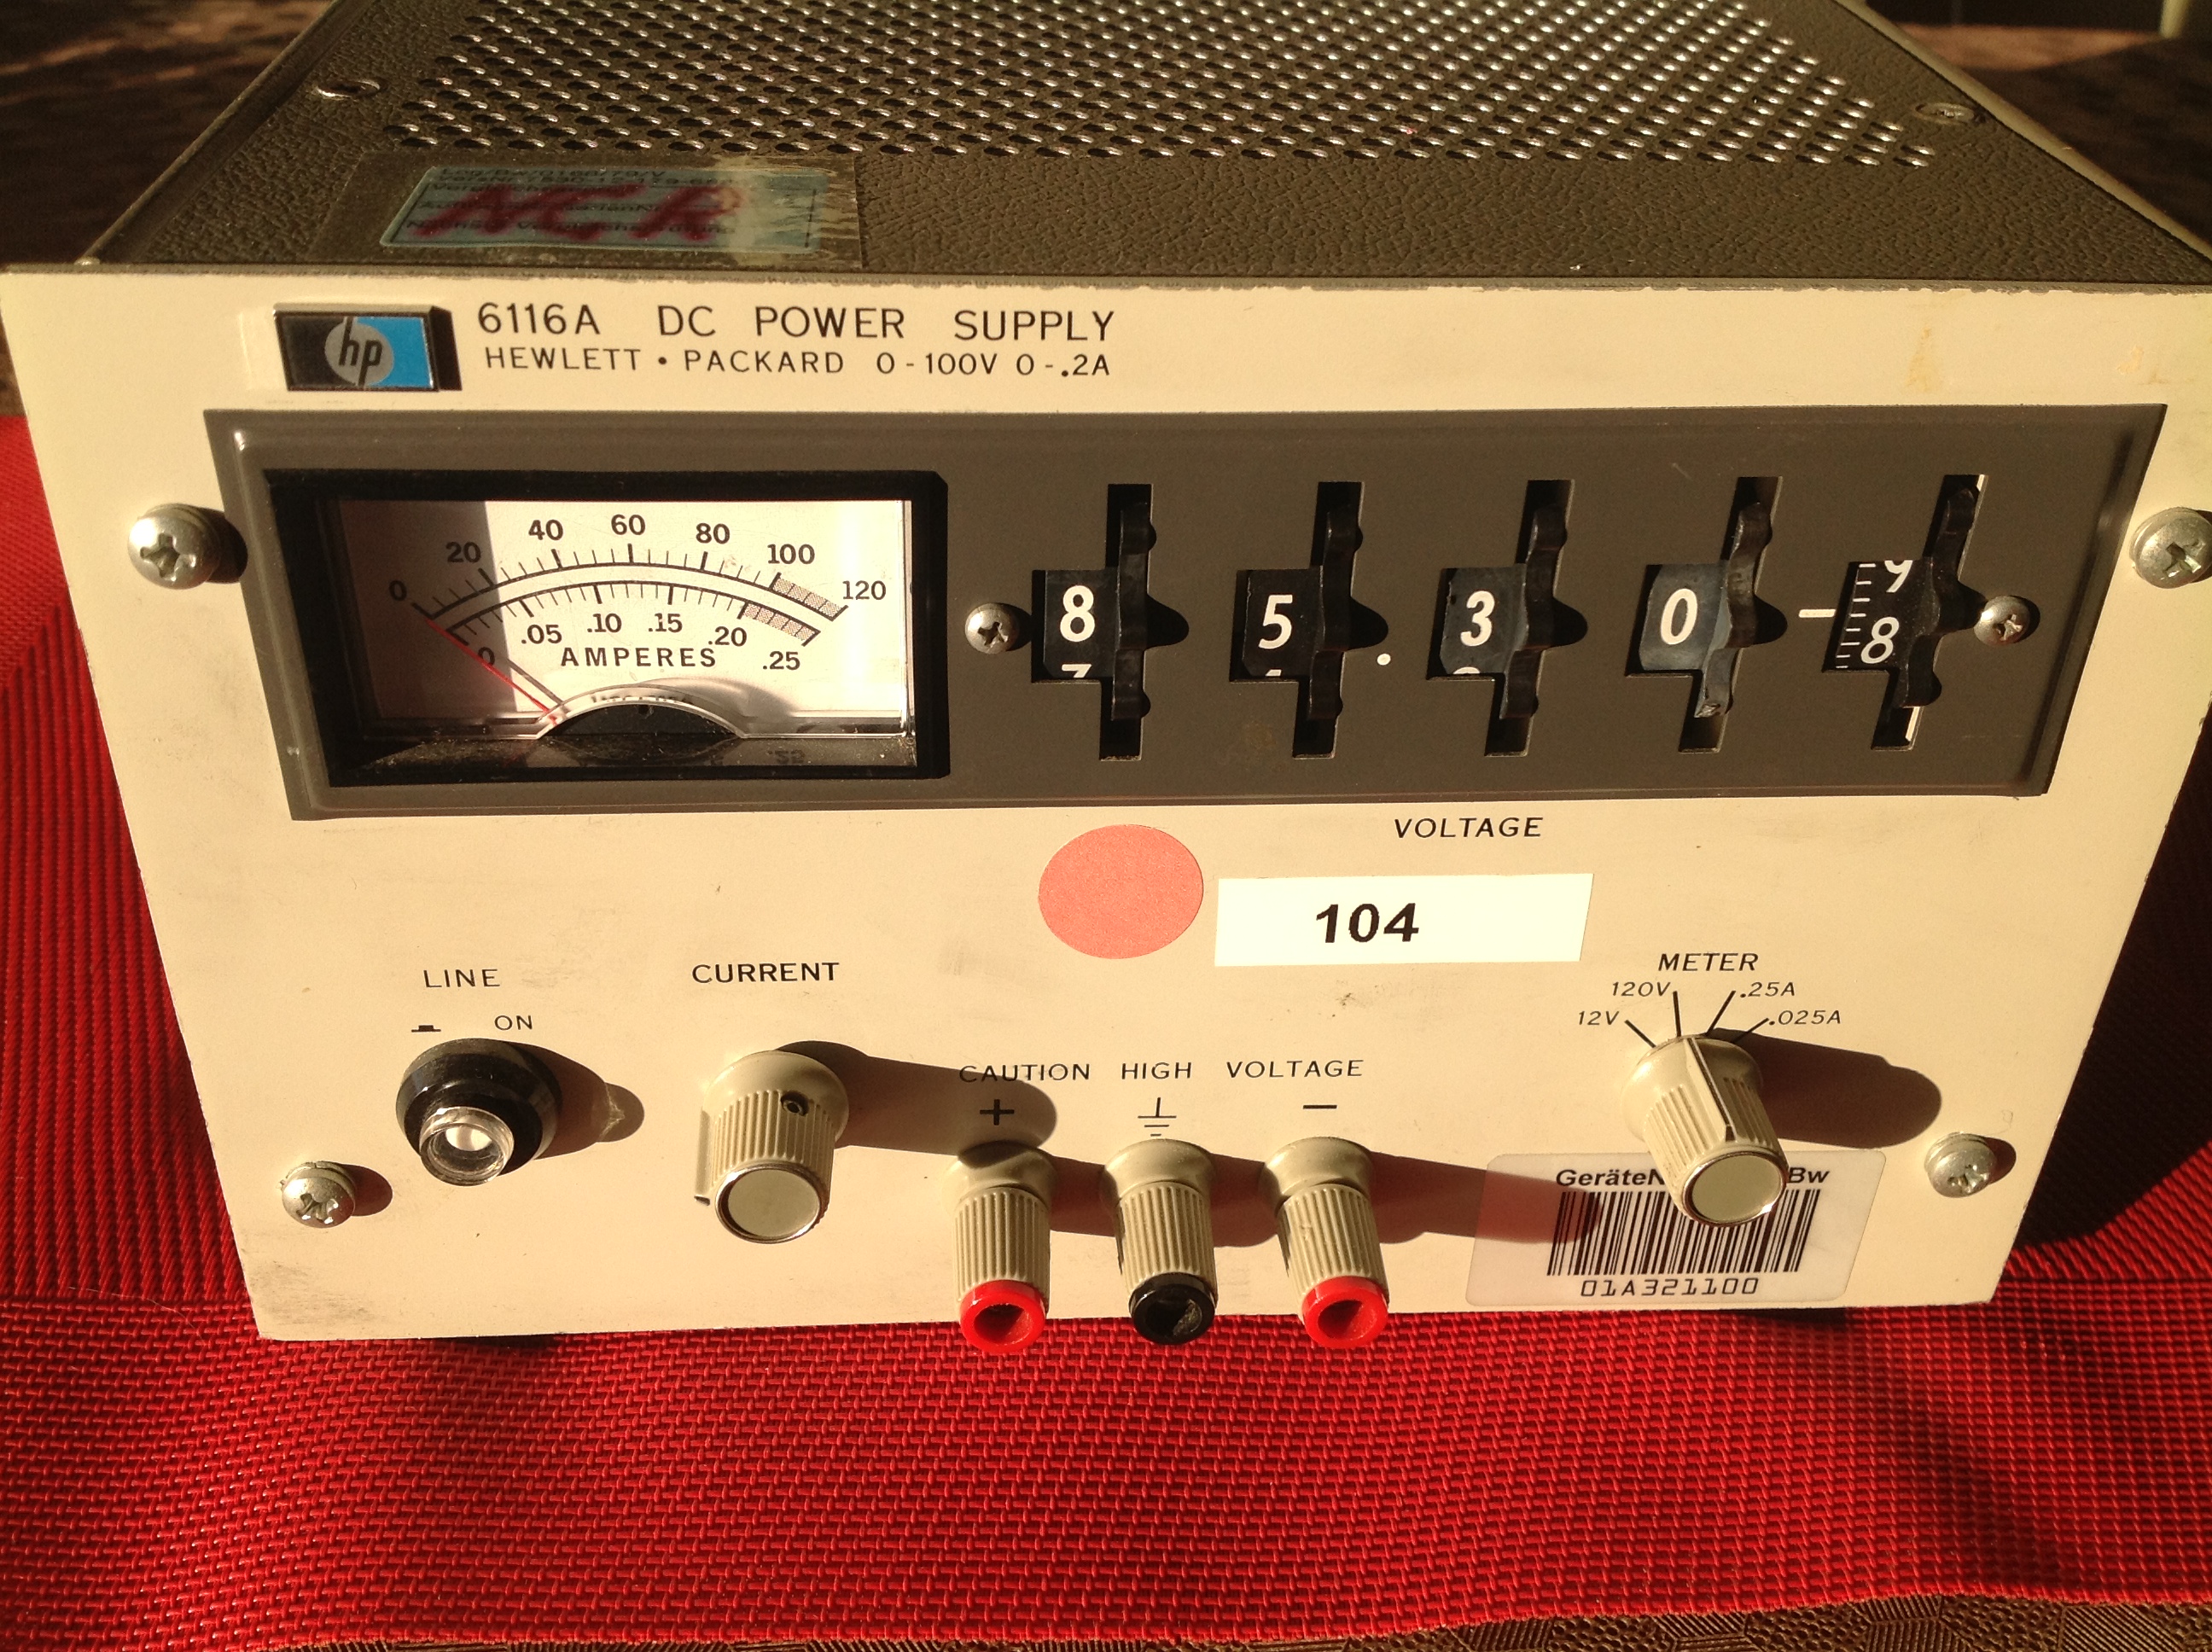 Hewlett Packard 6116A DC Power Supply